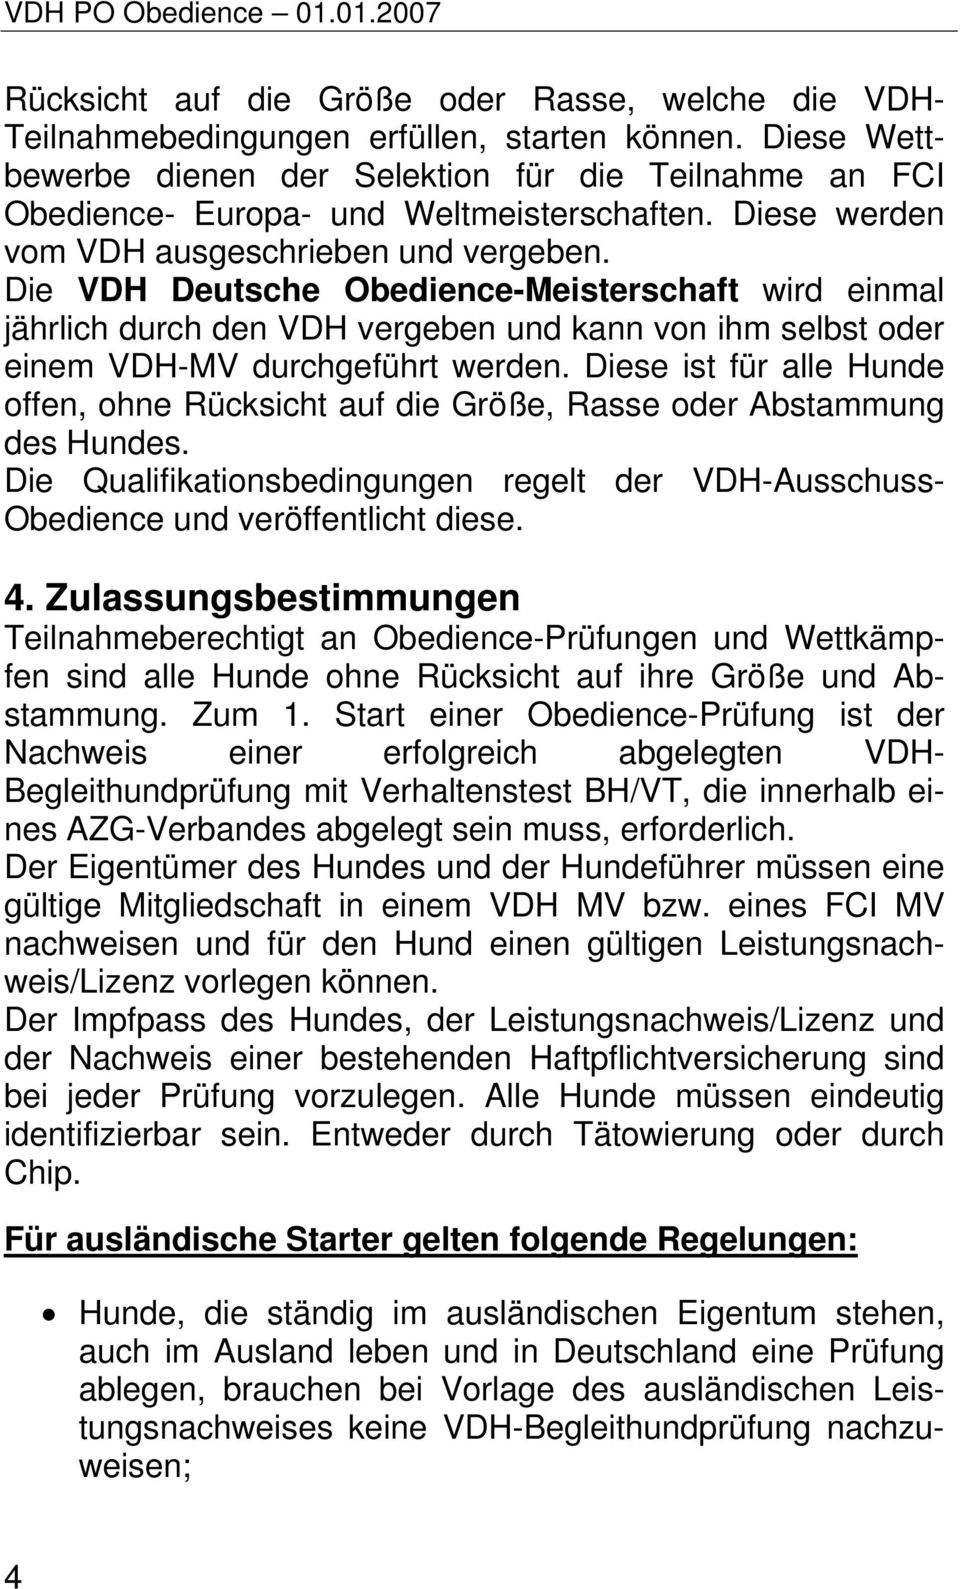 Die VDH Deutsche Obedience-Meisterschaft wird einmal jährlich durch den VDH vergeben und kann von ihm selbst oder einem VDH-MV durchgeführt werden.